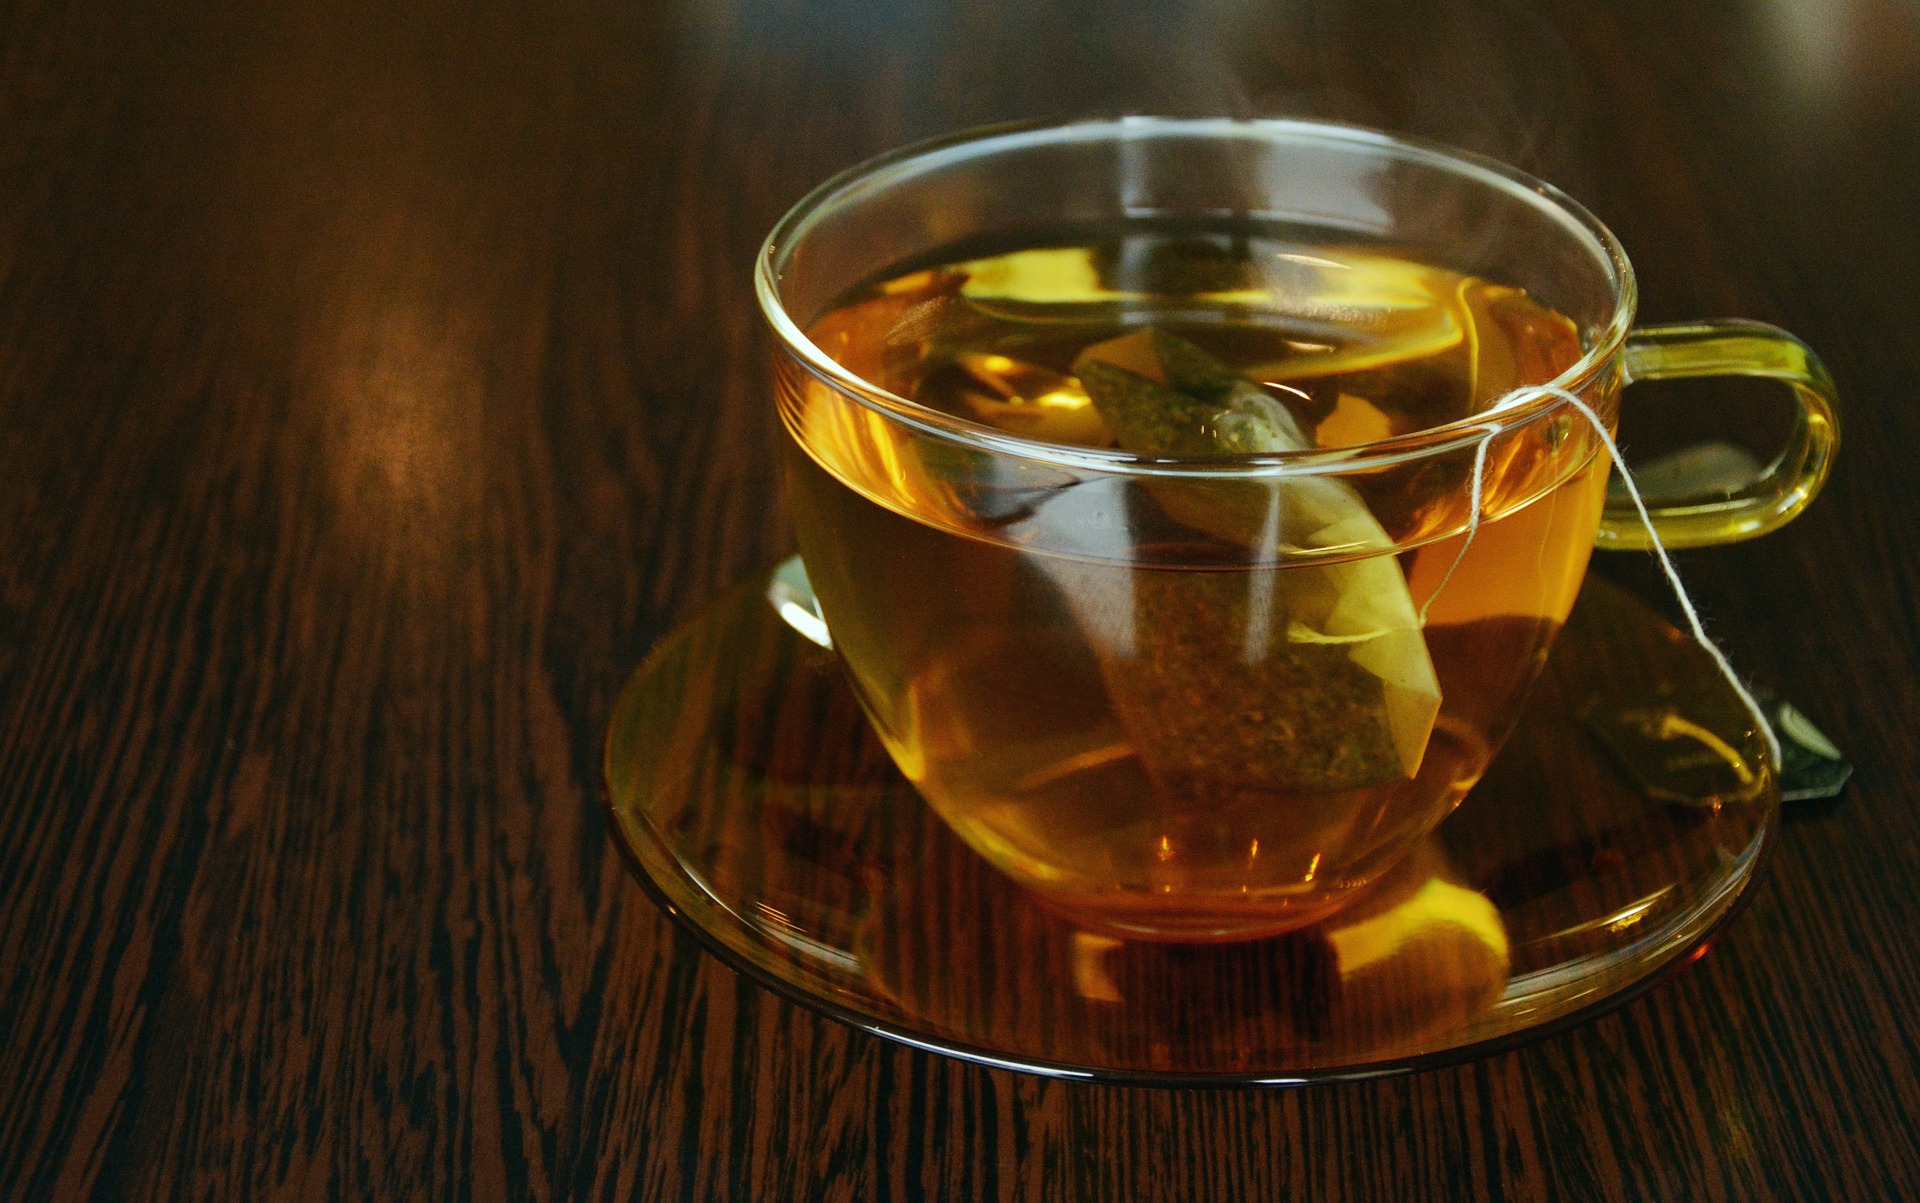 هل شرب الشاي بعد الطعام يمنع امتصاص الحديد؟